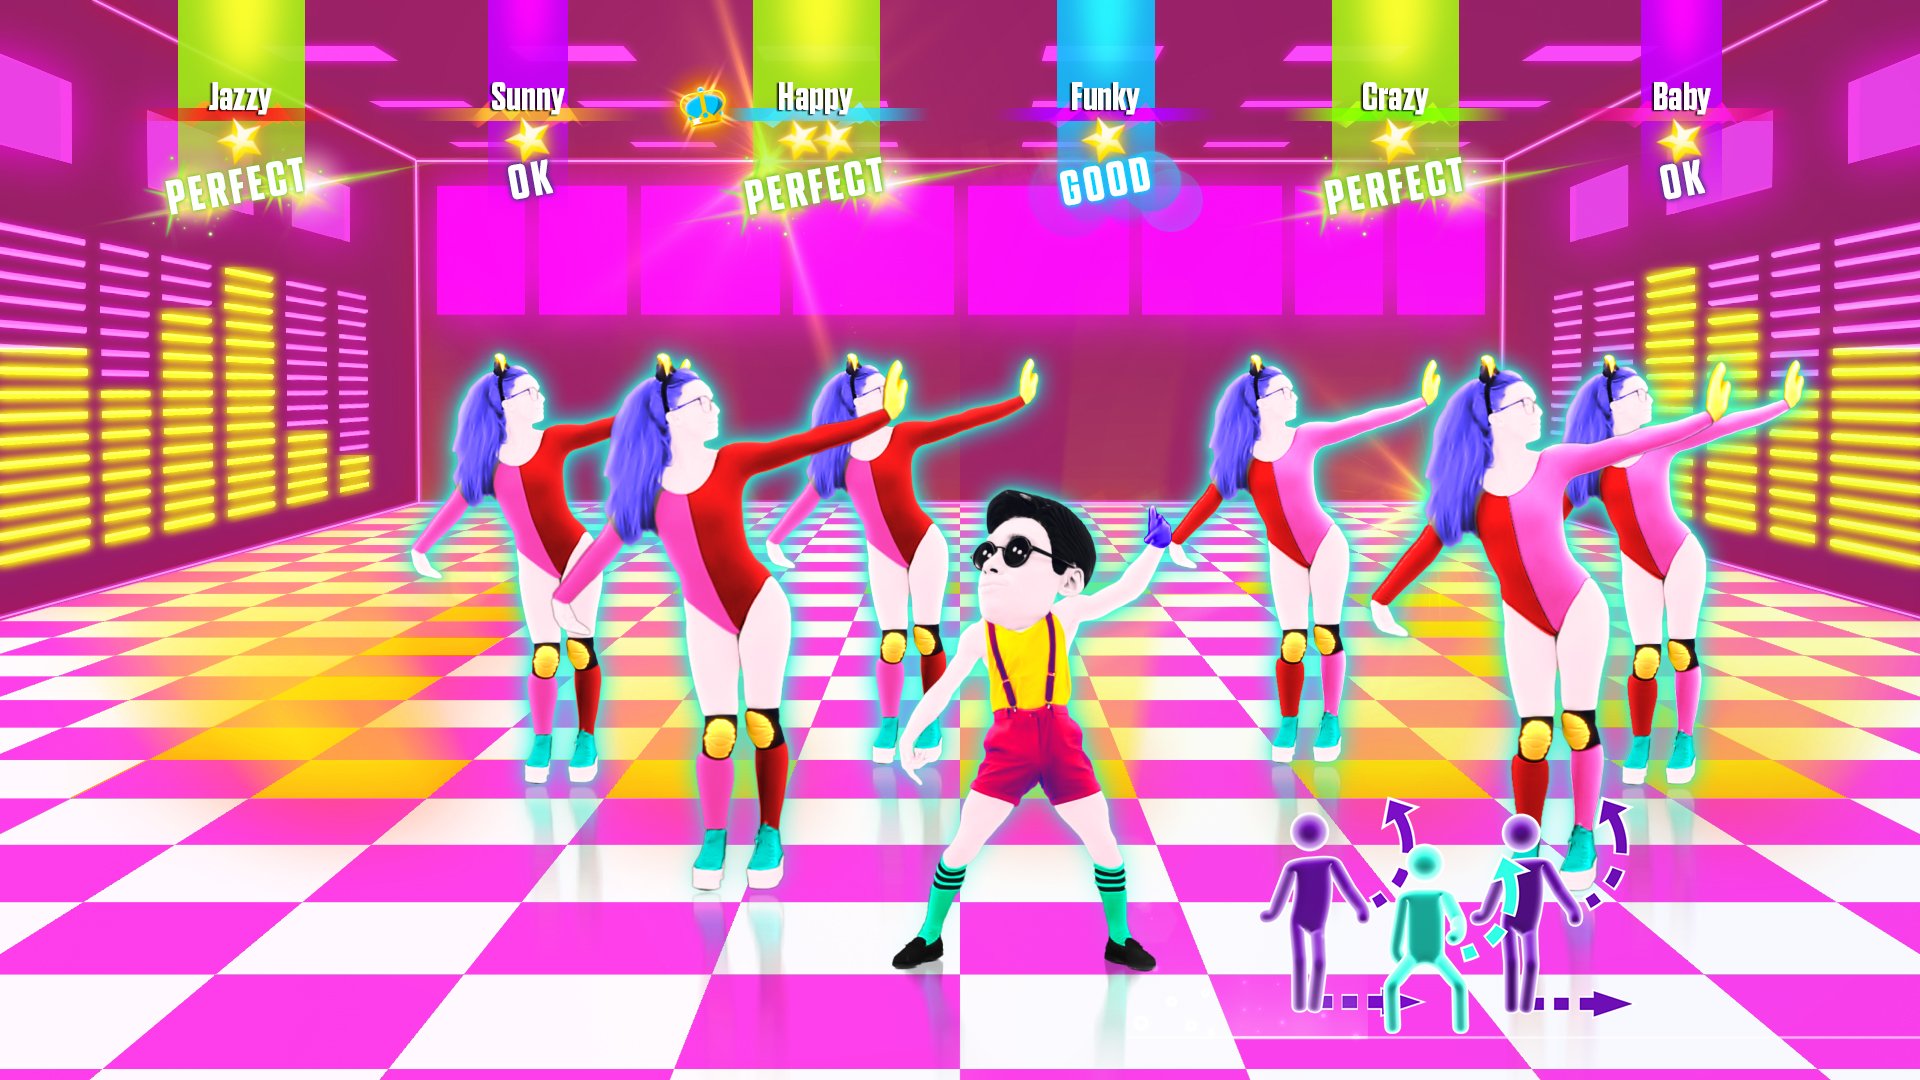 Игру где надо придумывать. Игра танцы just Dance. Джаст дэнс 2017. Just Dance 4 Xbox 360. Танцевальная интерактивная игра just Dance.